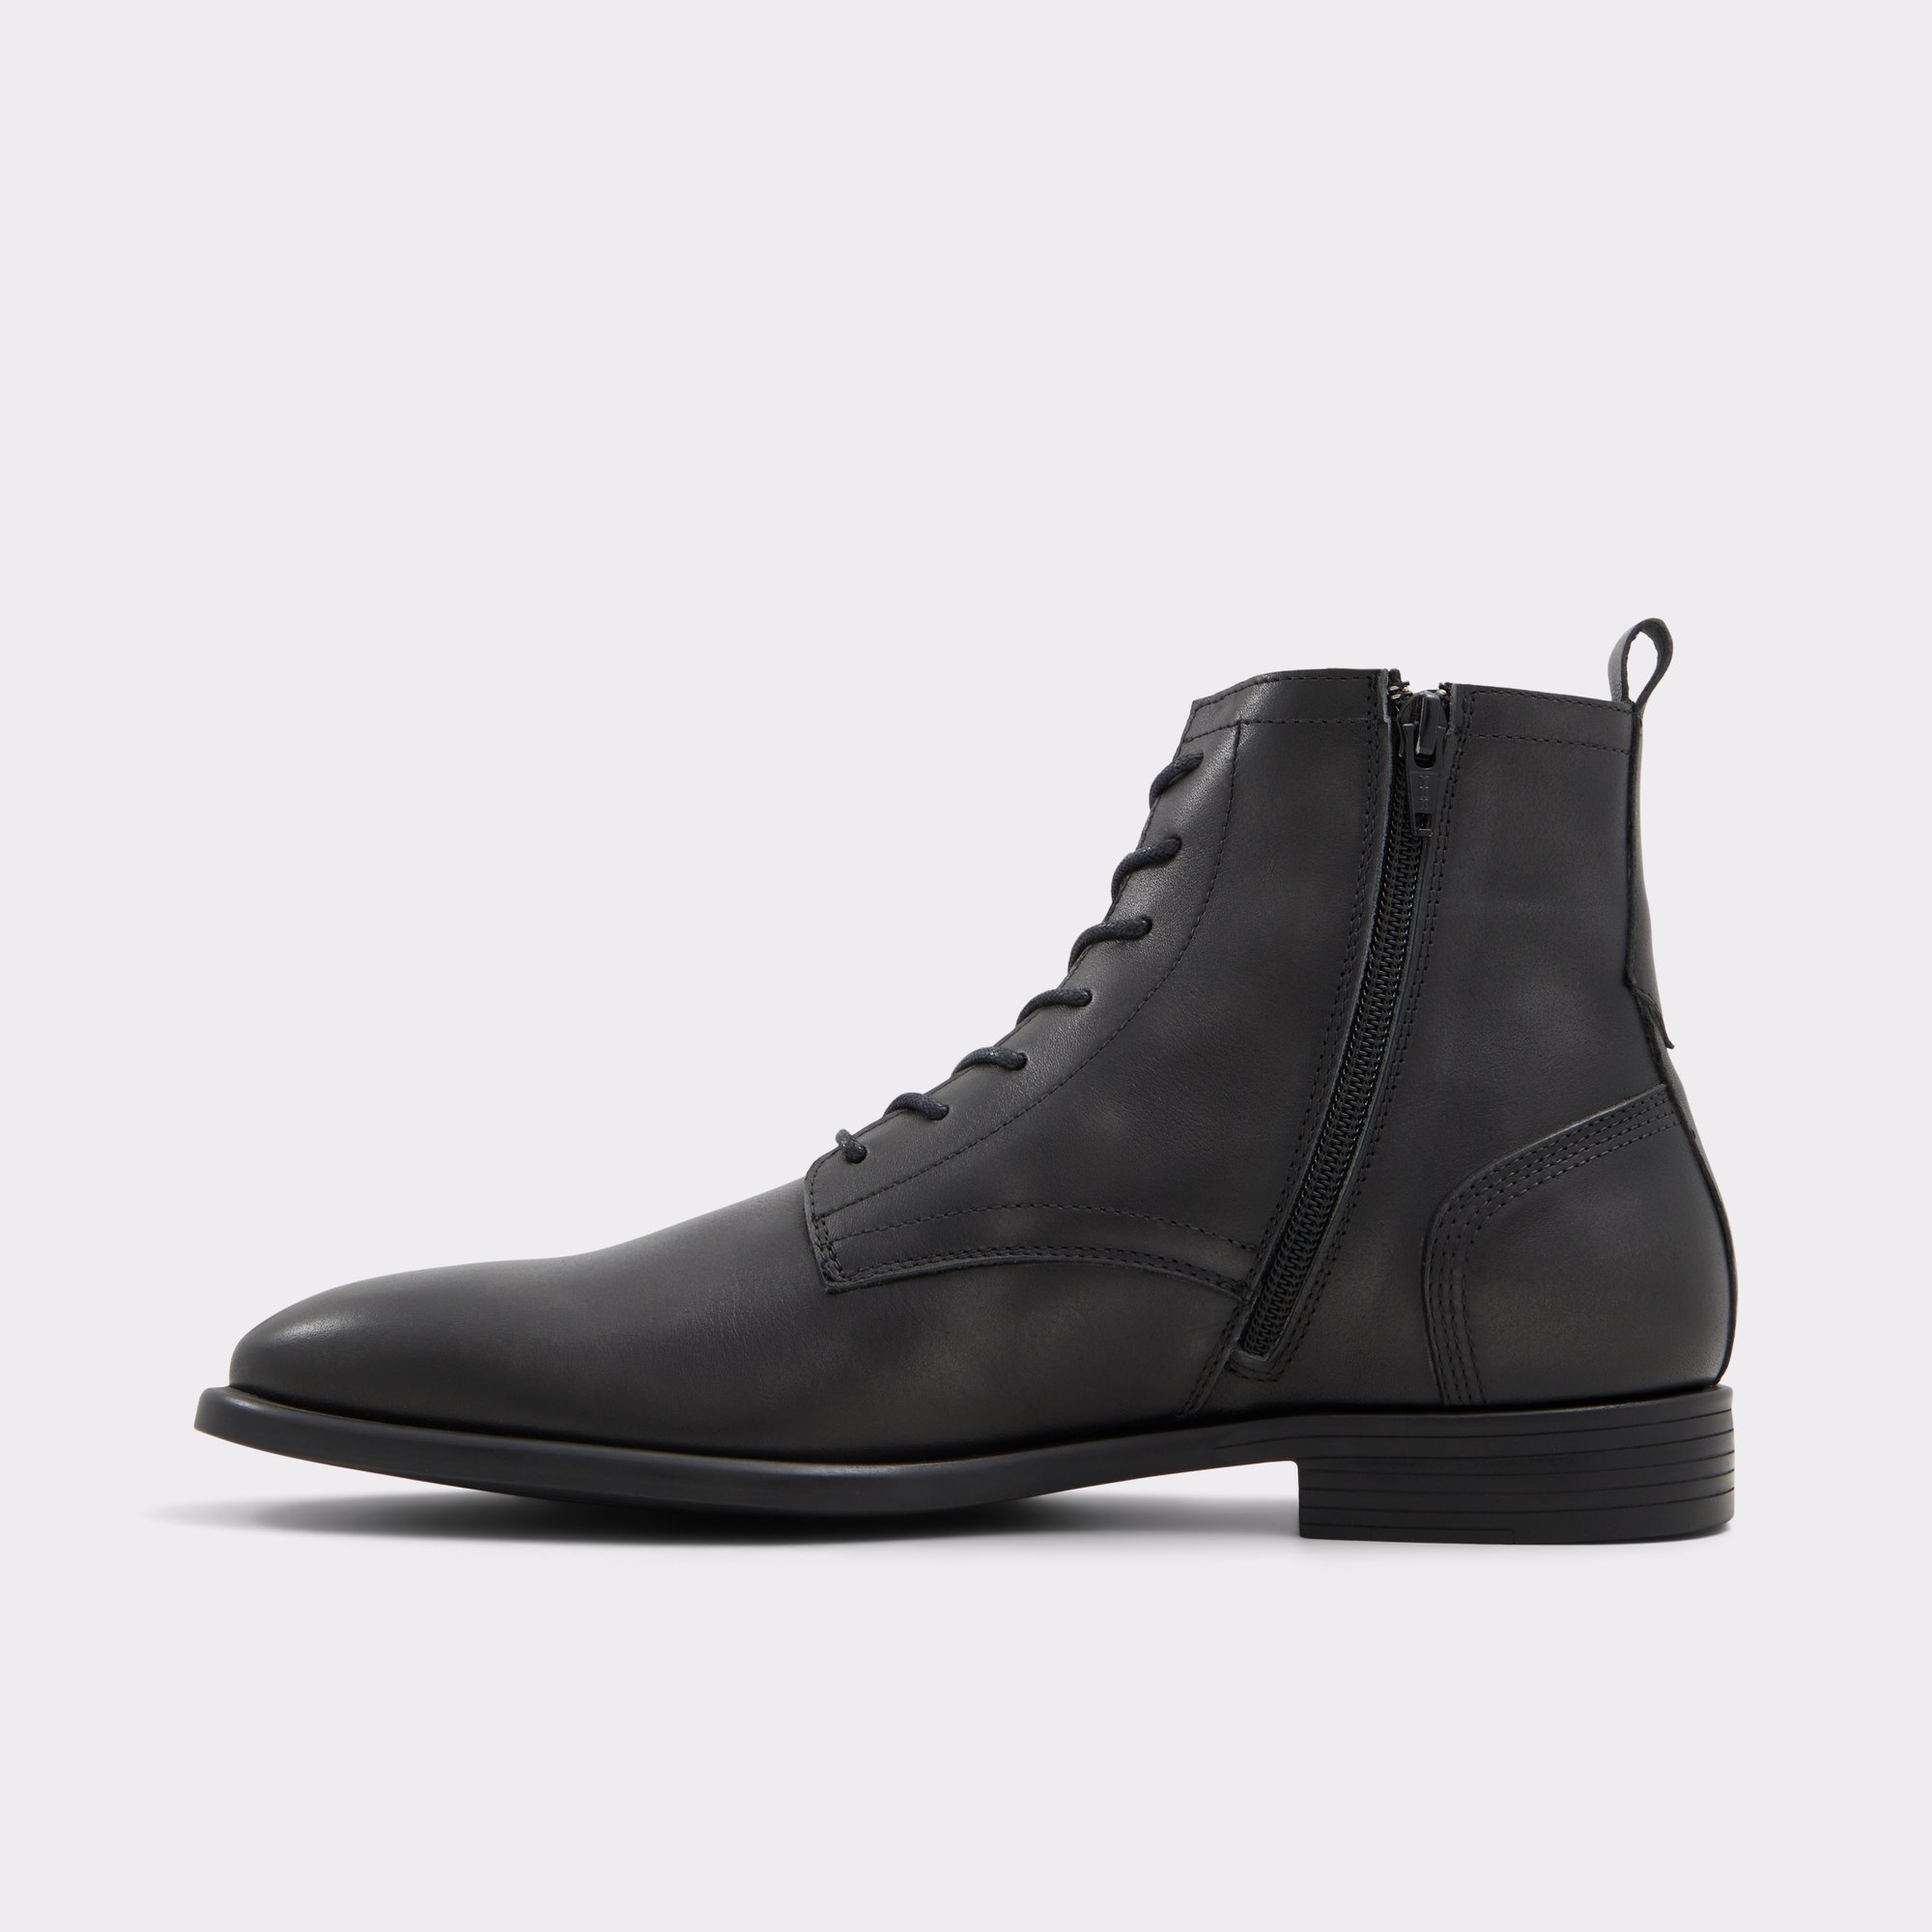 Fischer Black Men's Casual boots | ALDO US